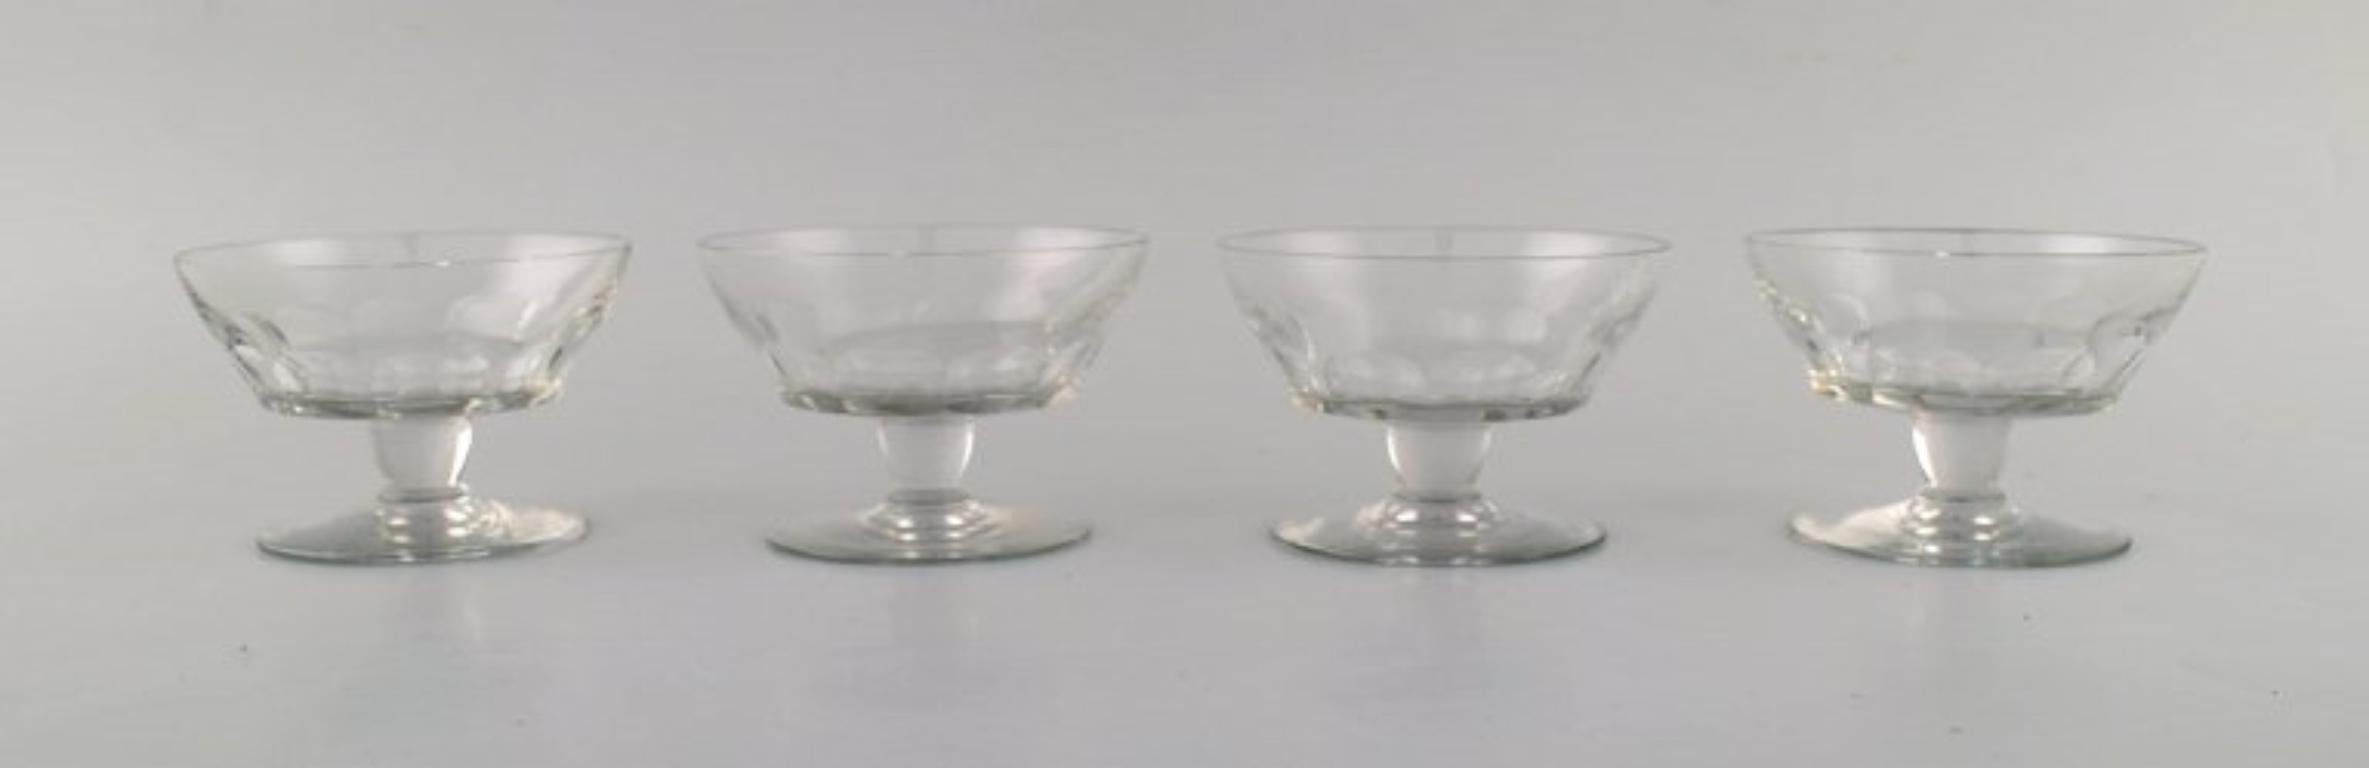 Baccarat, Frankreich. Zehn Art-Déco-Gläser mit Facettenschliff. 
Kunstglas, 1930 / 40er Jahre.
Maße: 9,5 x 6,5 cm.
In sehr gutem Zustand.
Gestempelt.